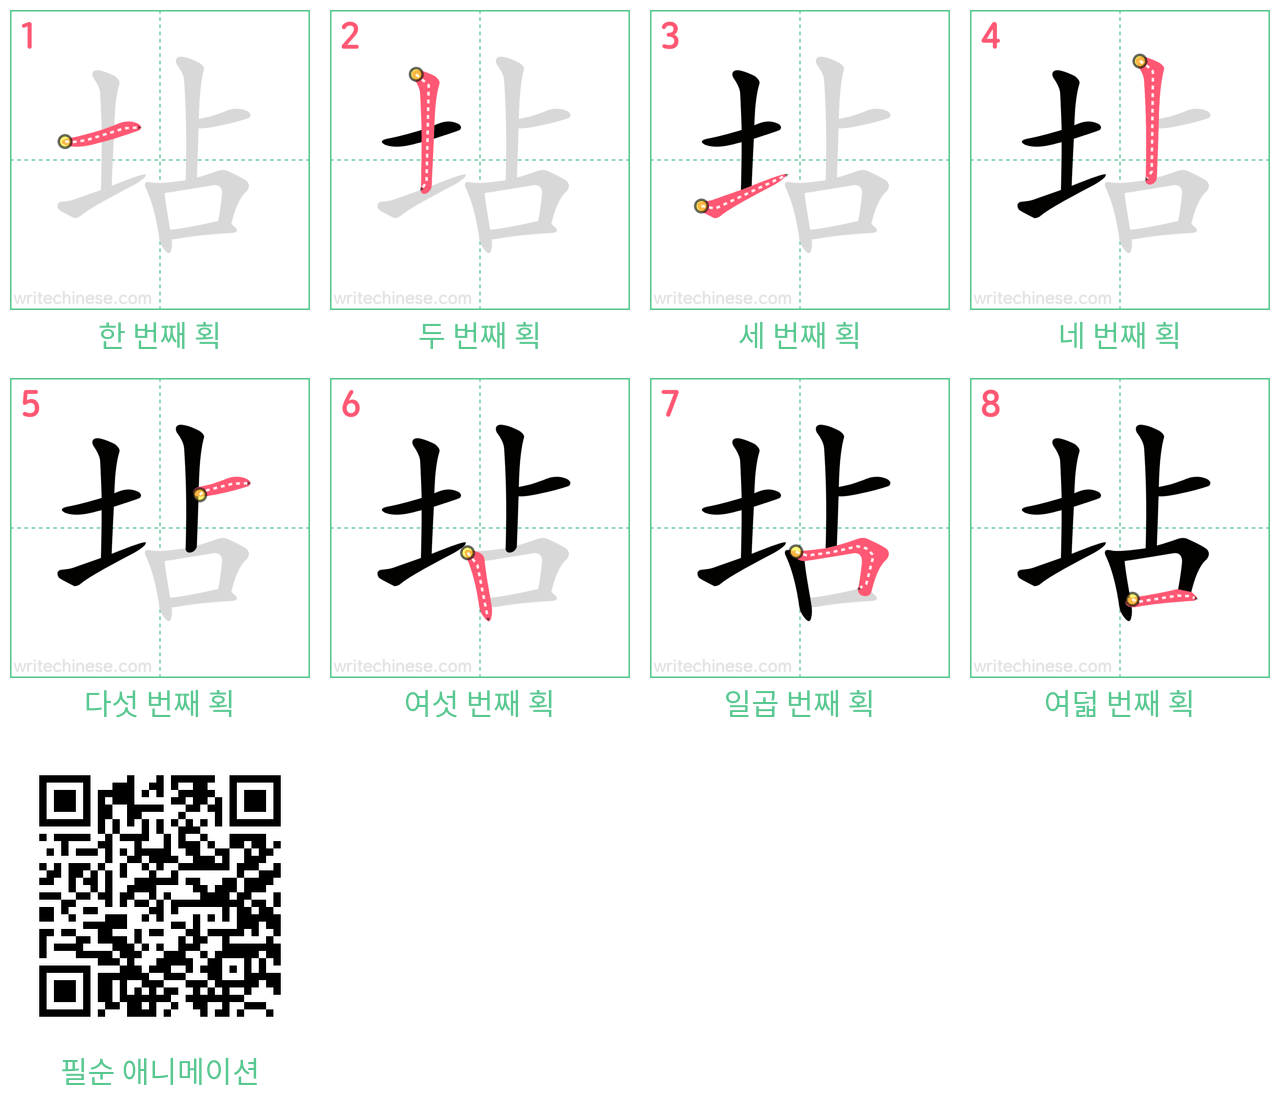 坫 step-by-step stroke order diagrams